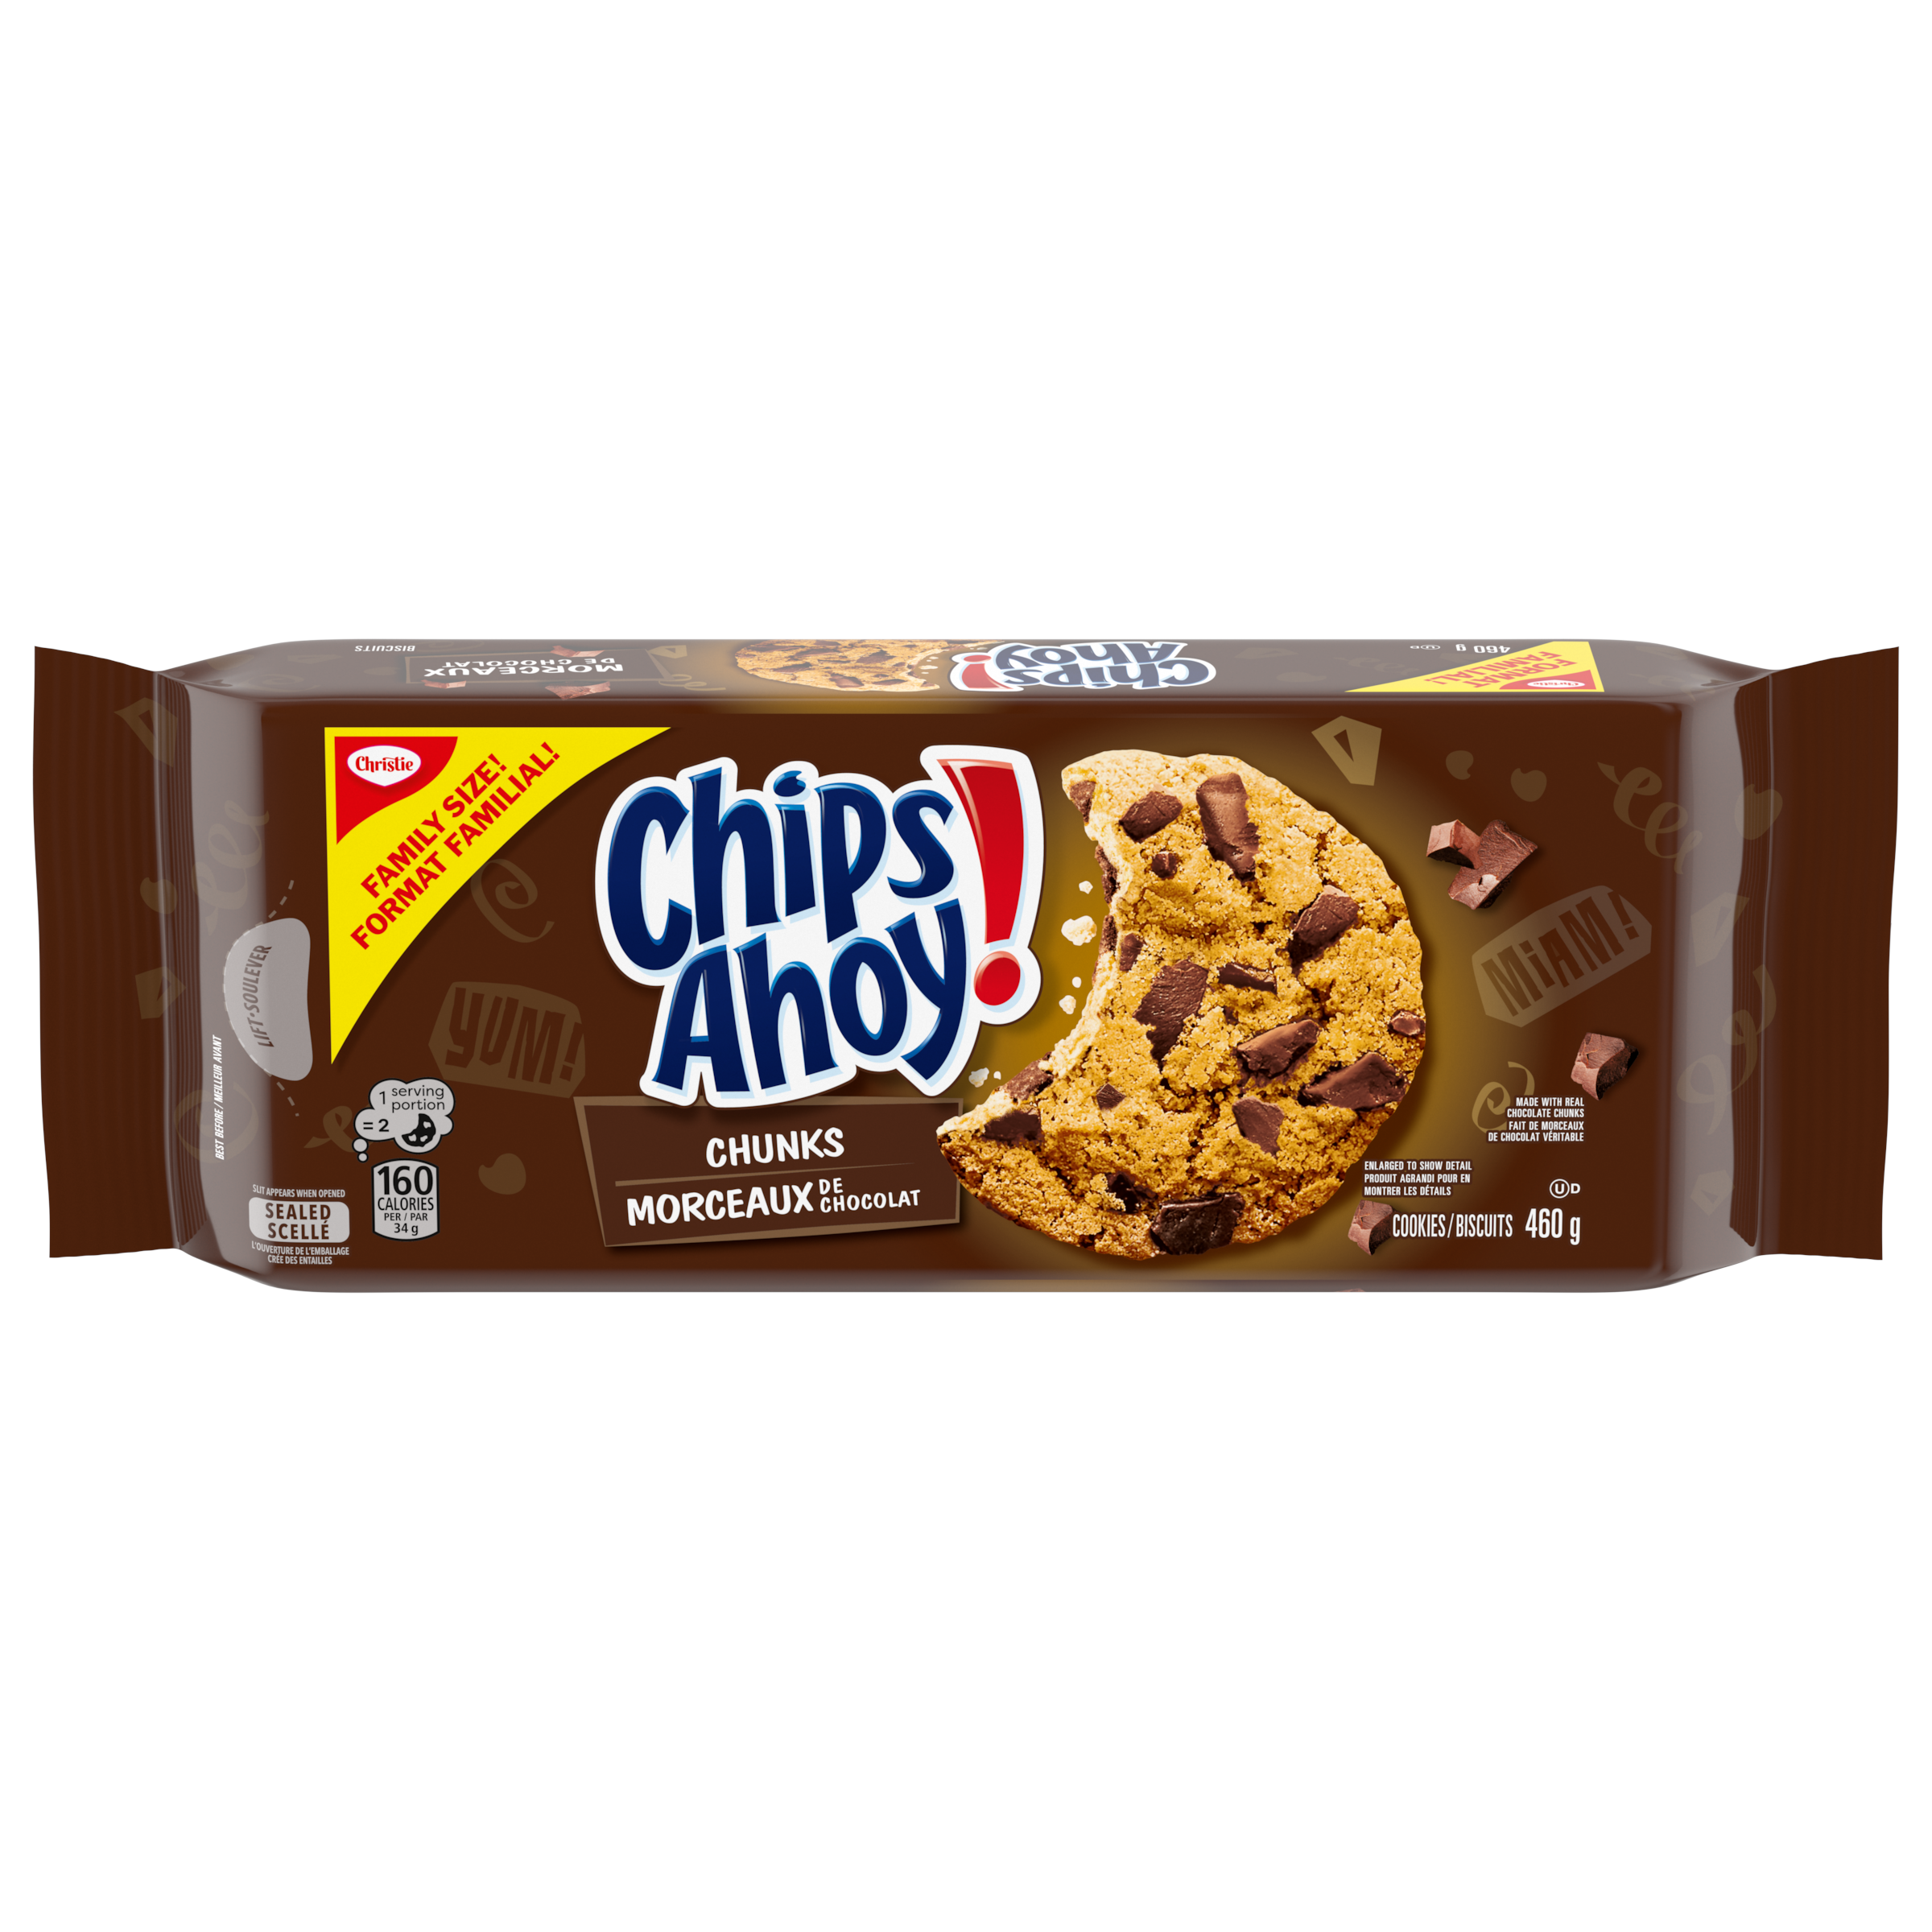 Biscuits CHIPS AHOY! Morceaux de chocolat, 1 emballage refermable, format familial de 460g-0